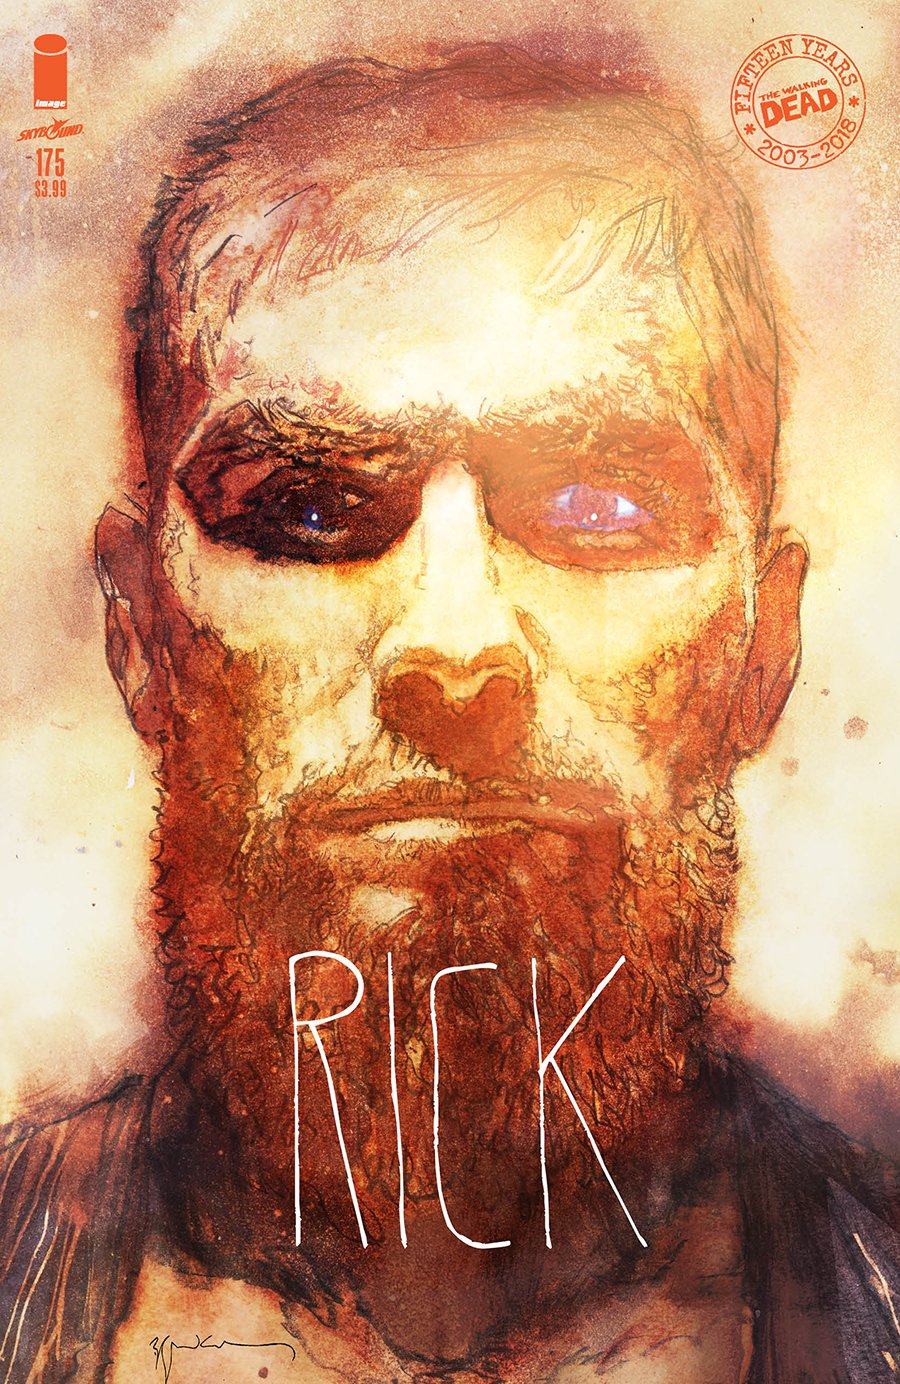 La variant cover del numero 175 di The Walking Dead dedicata a Rick Grimes